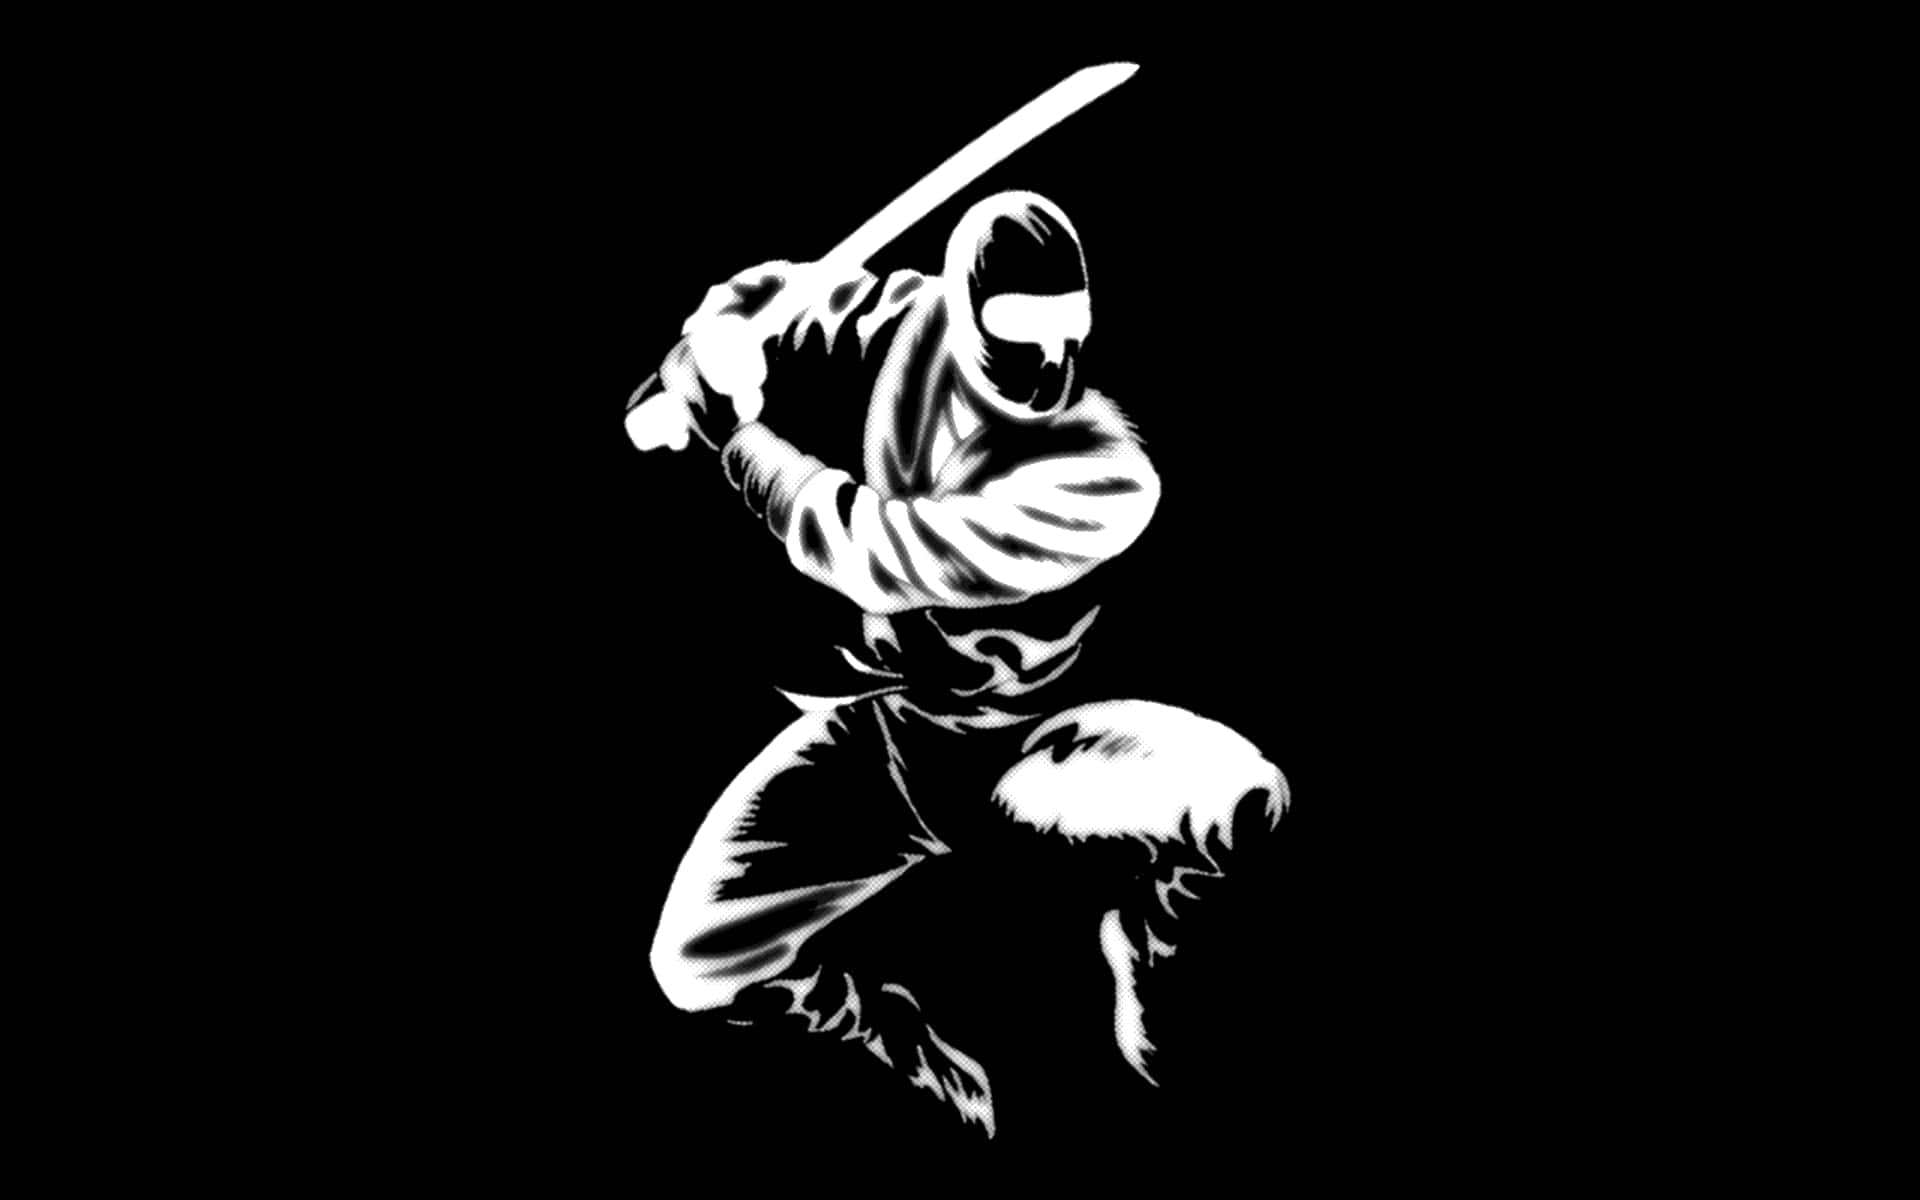 Eingeschickter Ninja, Der In Kampfkunst Bewandert Ist. Wallpaper